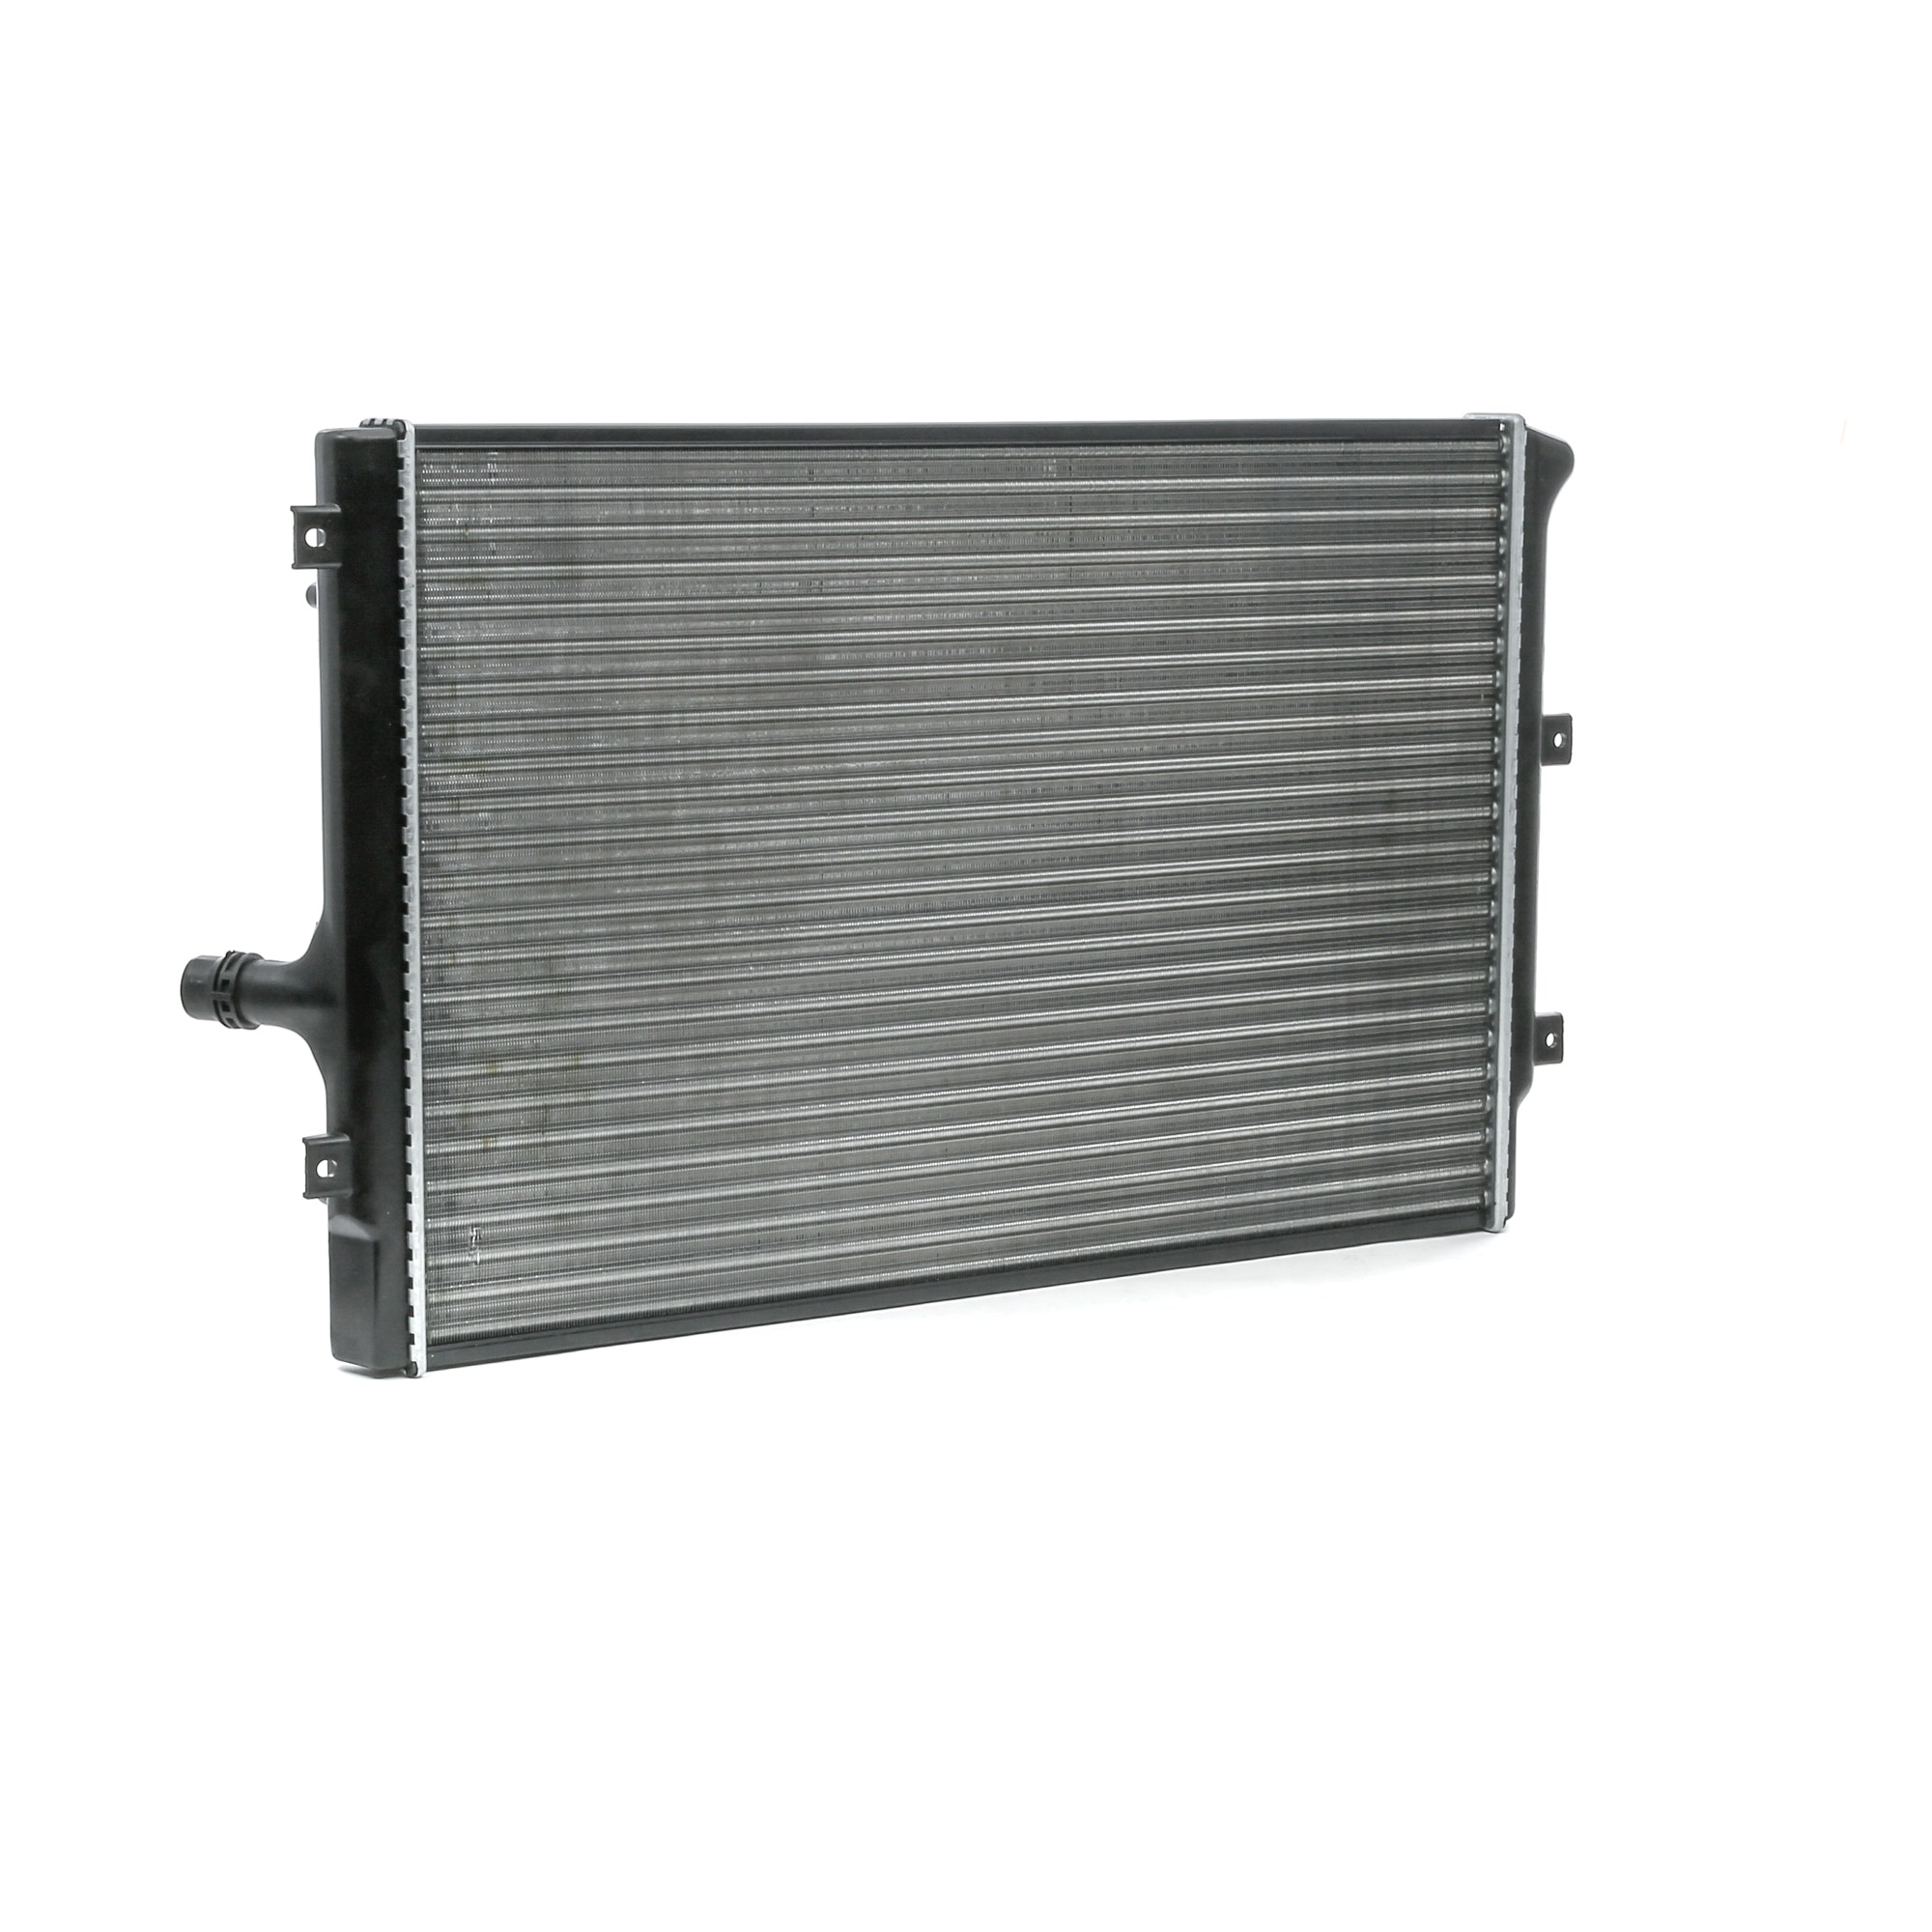 MAXGEAR AC221021 Engine radiator Aluminium, 440, 454,3 x 647, 454,3 x 32, 34 mm, Brazed cooling fins